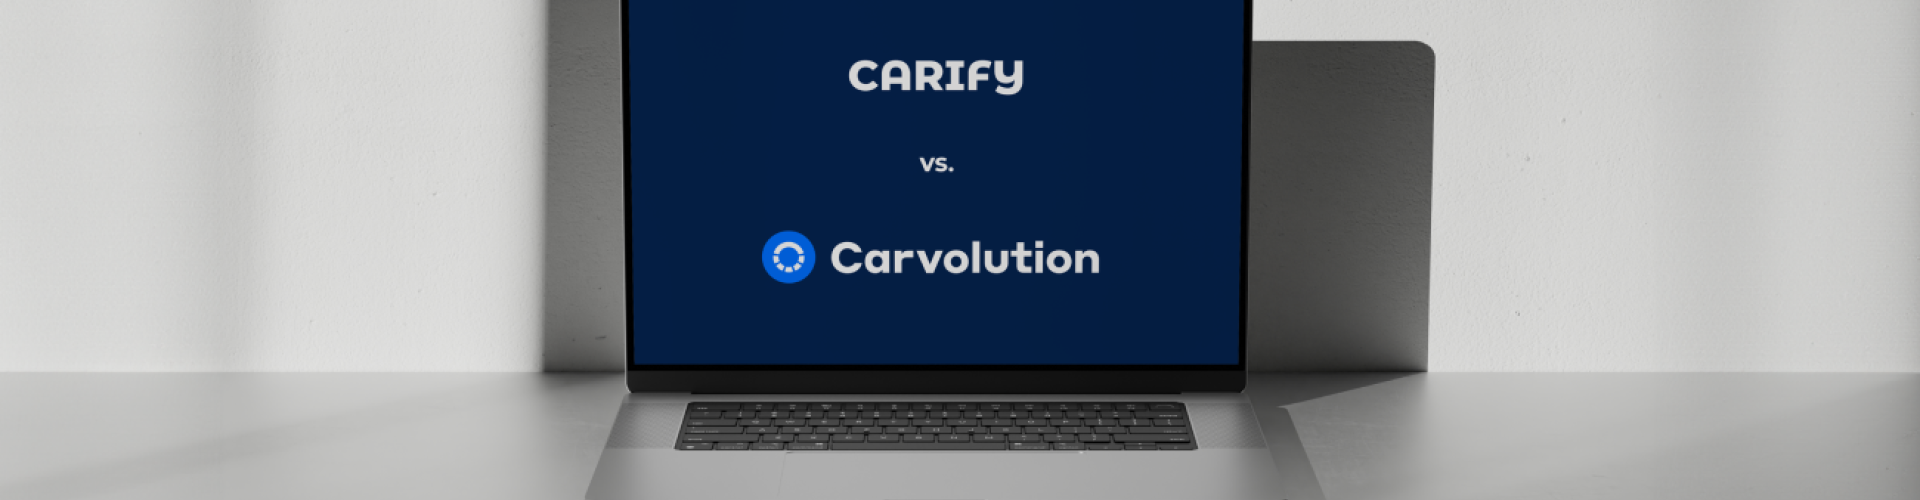 Carify Carvolution header